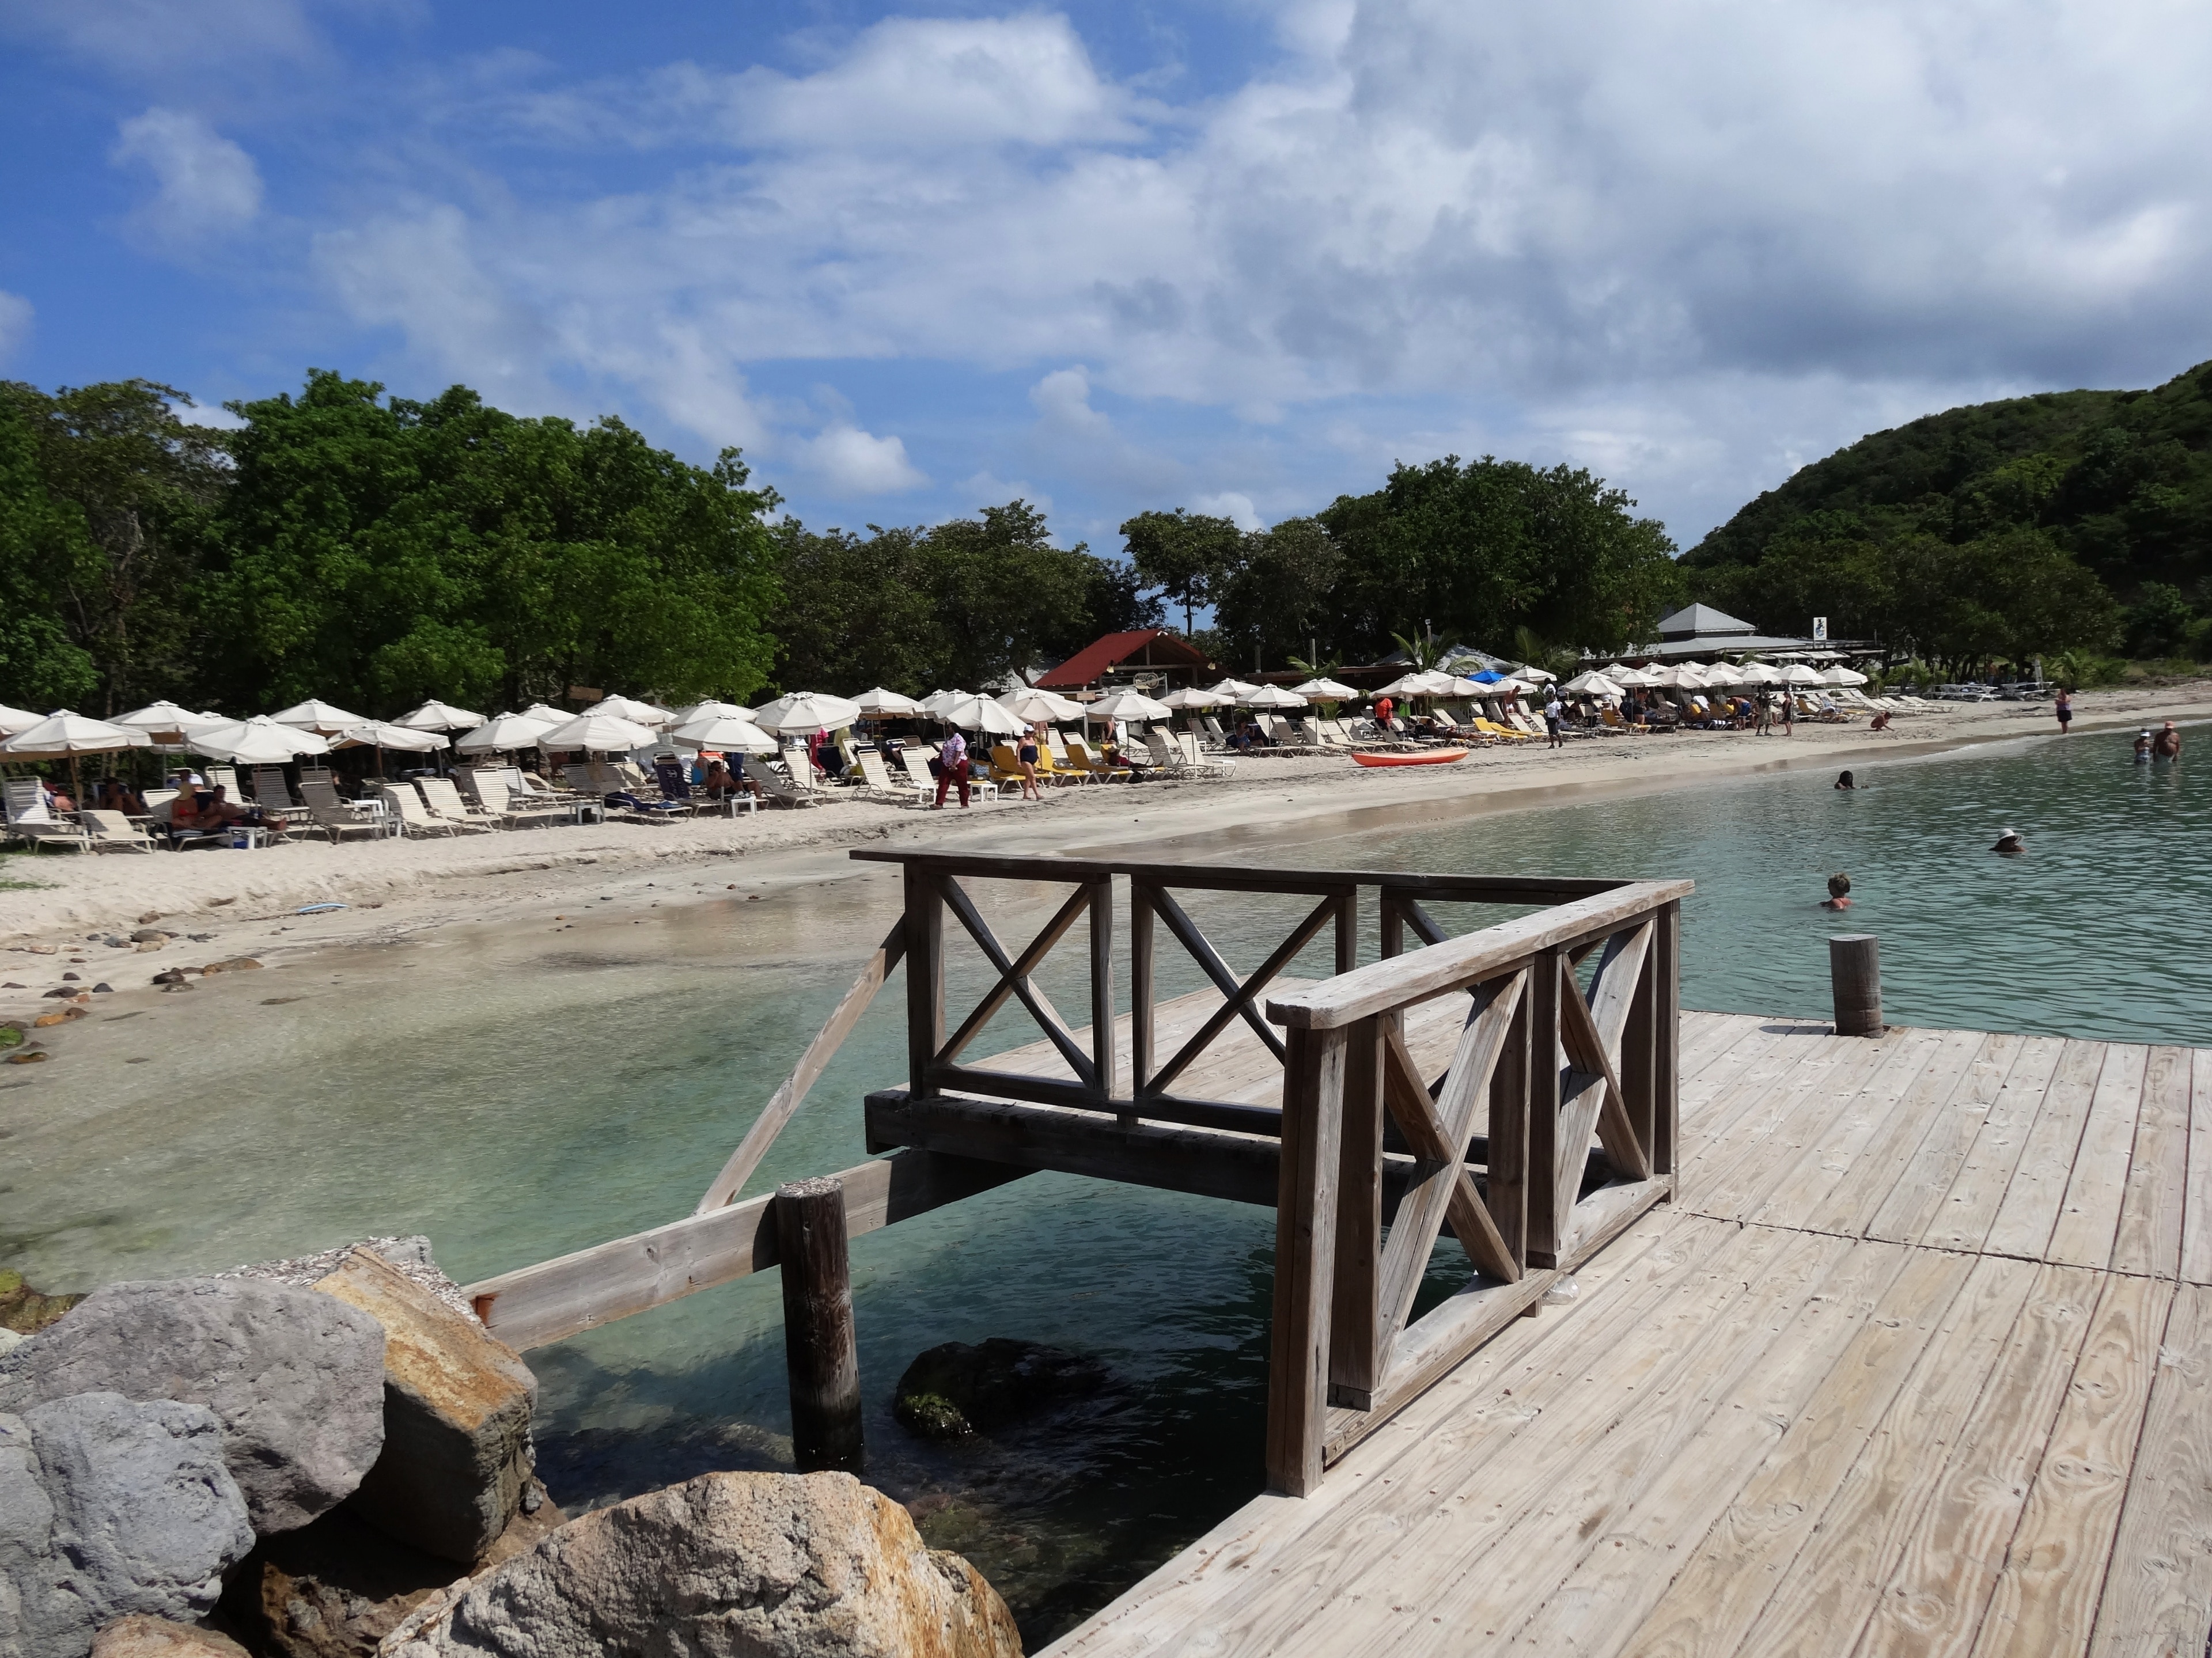 #SaintKitts #Nevis #Caribbean 

A Cockleshell Bay é uma baía de águas limpas e mar tranquilo. A praia é boa para crianças. Na época em que a conheci a infraestrutura era pequena com apenas um bar e um restaurante. A areia estava maculada com muitas algas mas fui informado que parte das algas são deixadas na praia pois fazem parte de um micro ecossistema. Atrás da praia existe uma lagoa que à época exalava um cheiro forte de mangue.

Cockleshell Bay is a bay of clean water and calm sea. The beach is good for kids. At the time I visited it, the infrastructure was small, with only one bar and one restaurant. The sand was contaminated with many algae, but I was informed that some of the algae are left on the beach because they are part of a micro ecosystem. Behind the beach there is a lagoon that at the time exuded a strong swamp smell.